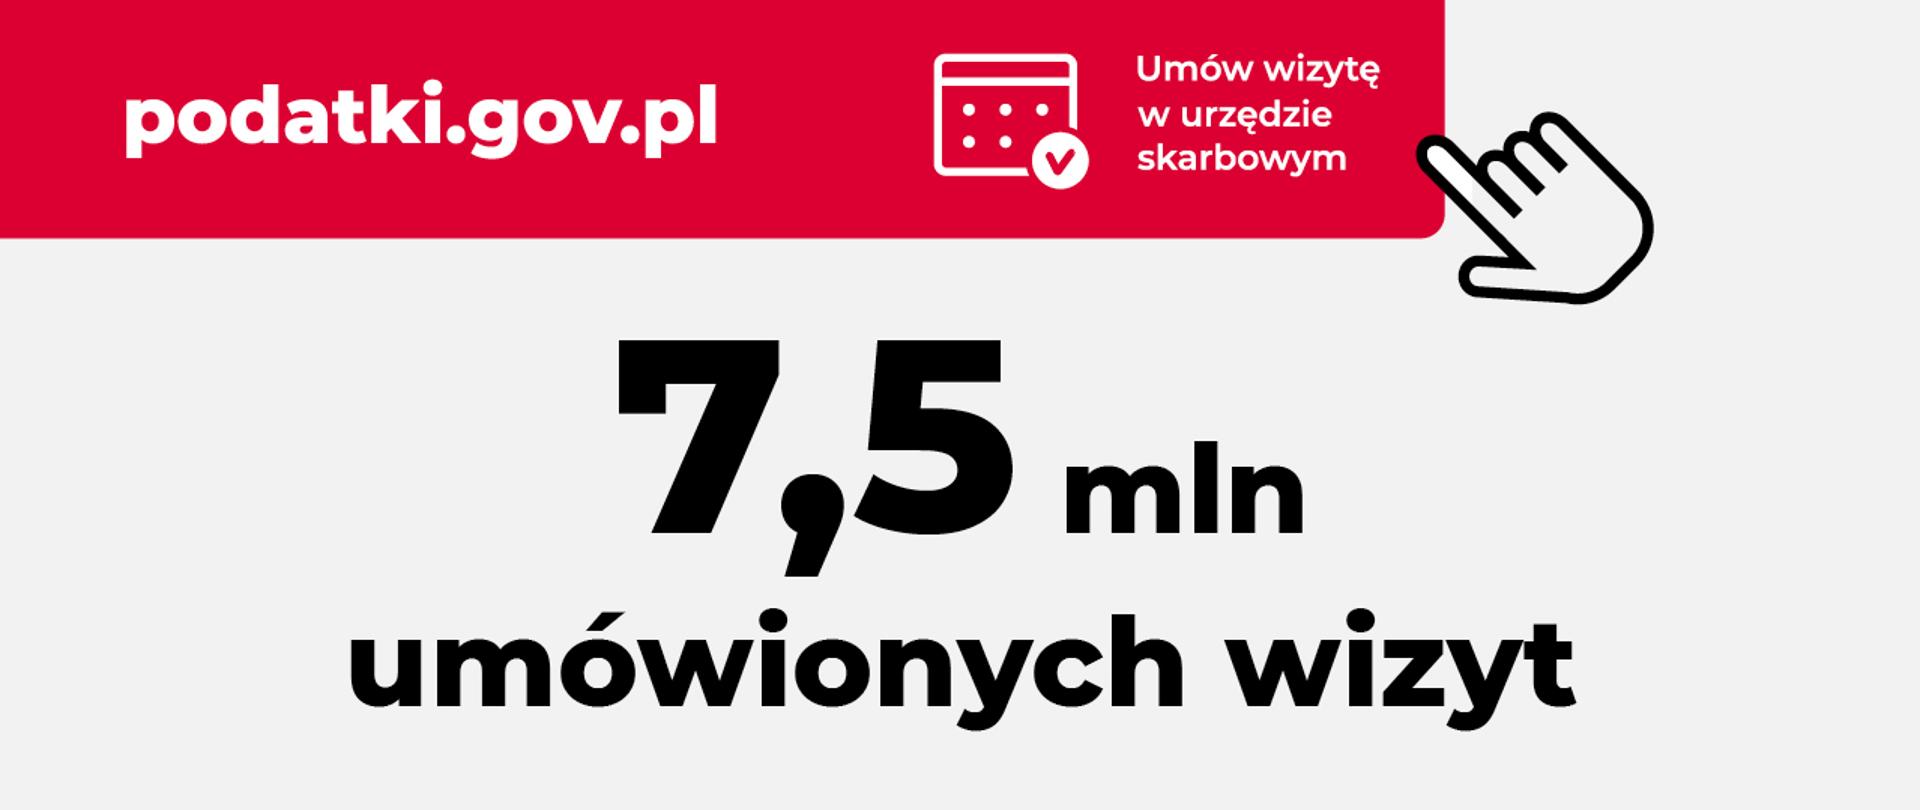 Adres strony podatki.gov.pl, kafel Umów wizytę w urzędzie skarbowym, napis 7,5 mln umówionych wizyt.